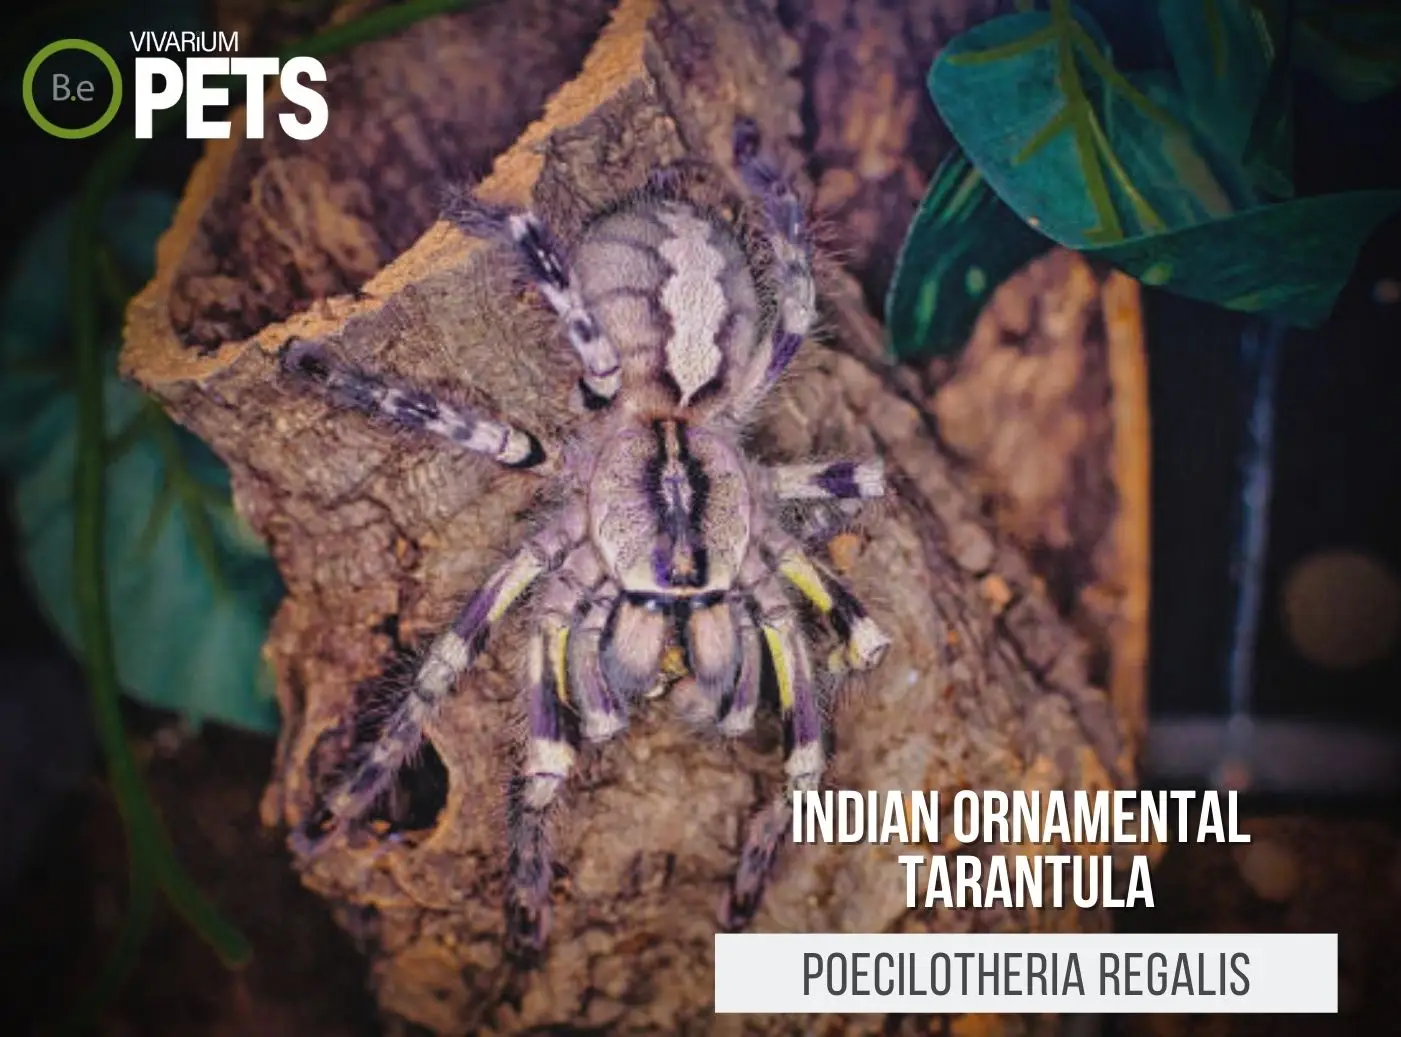 Poecilotheria regalis: Indian Ornamental Tarantula Care Guide